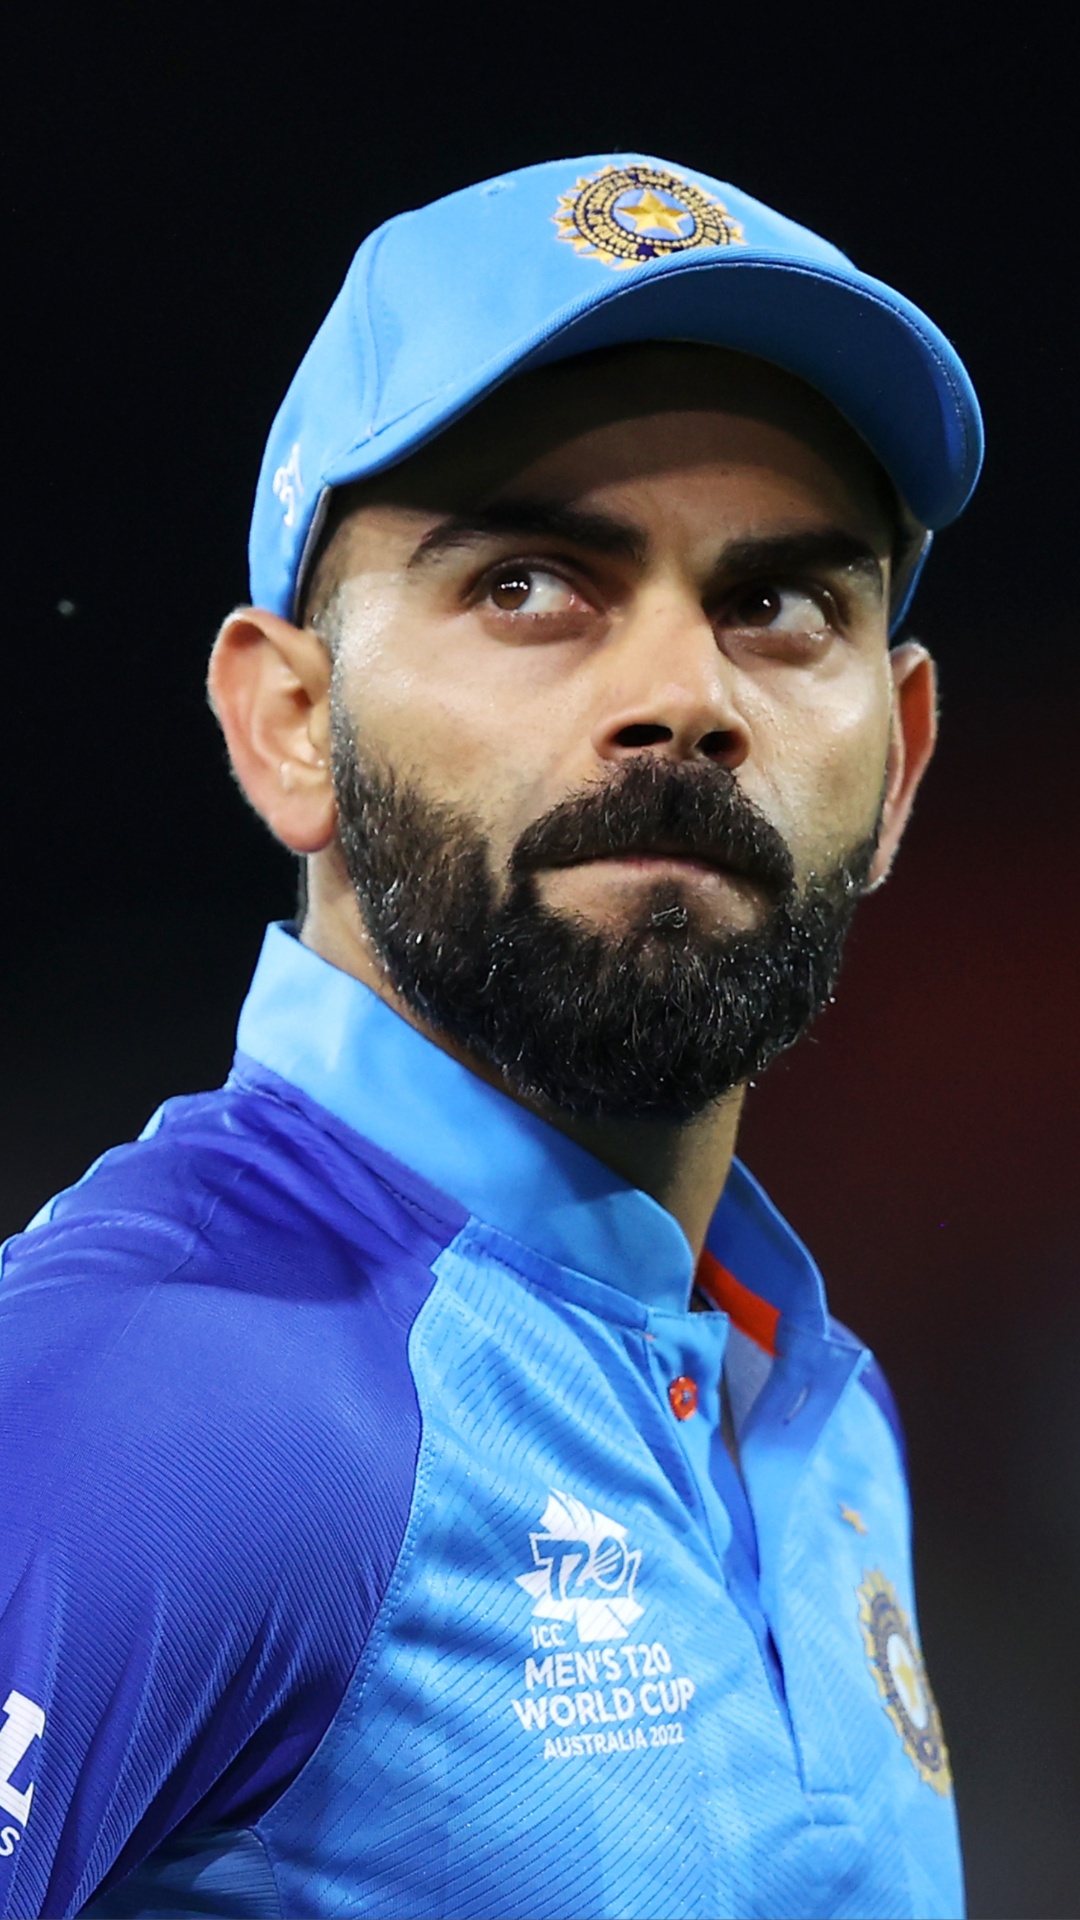 ICC टूर्नामेंट में ऑस्ट्रेलिया के खिलाफ सबसे ज्यादा रन बनाने वाले भारतीय बल्लेबाजों की लिस्ट